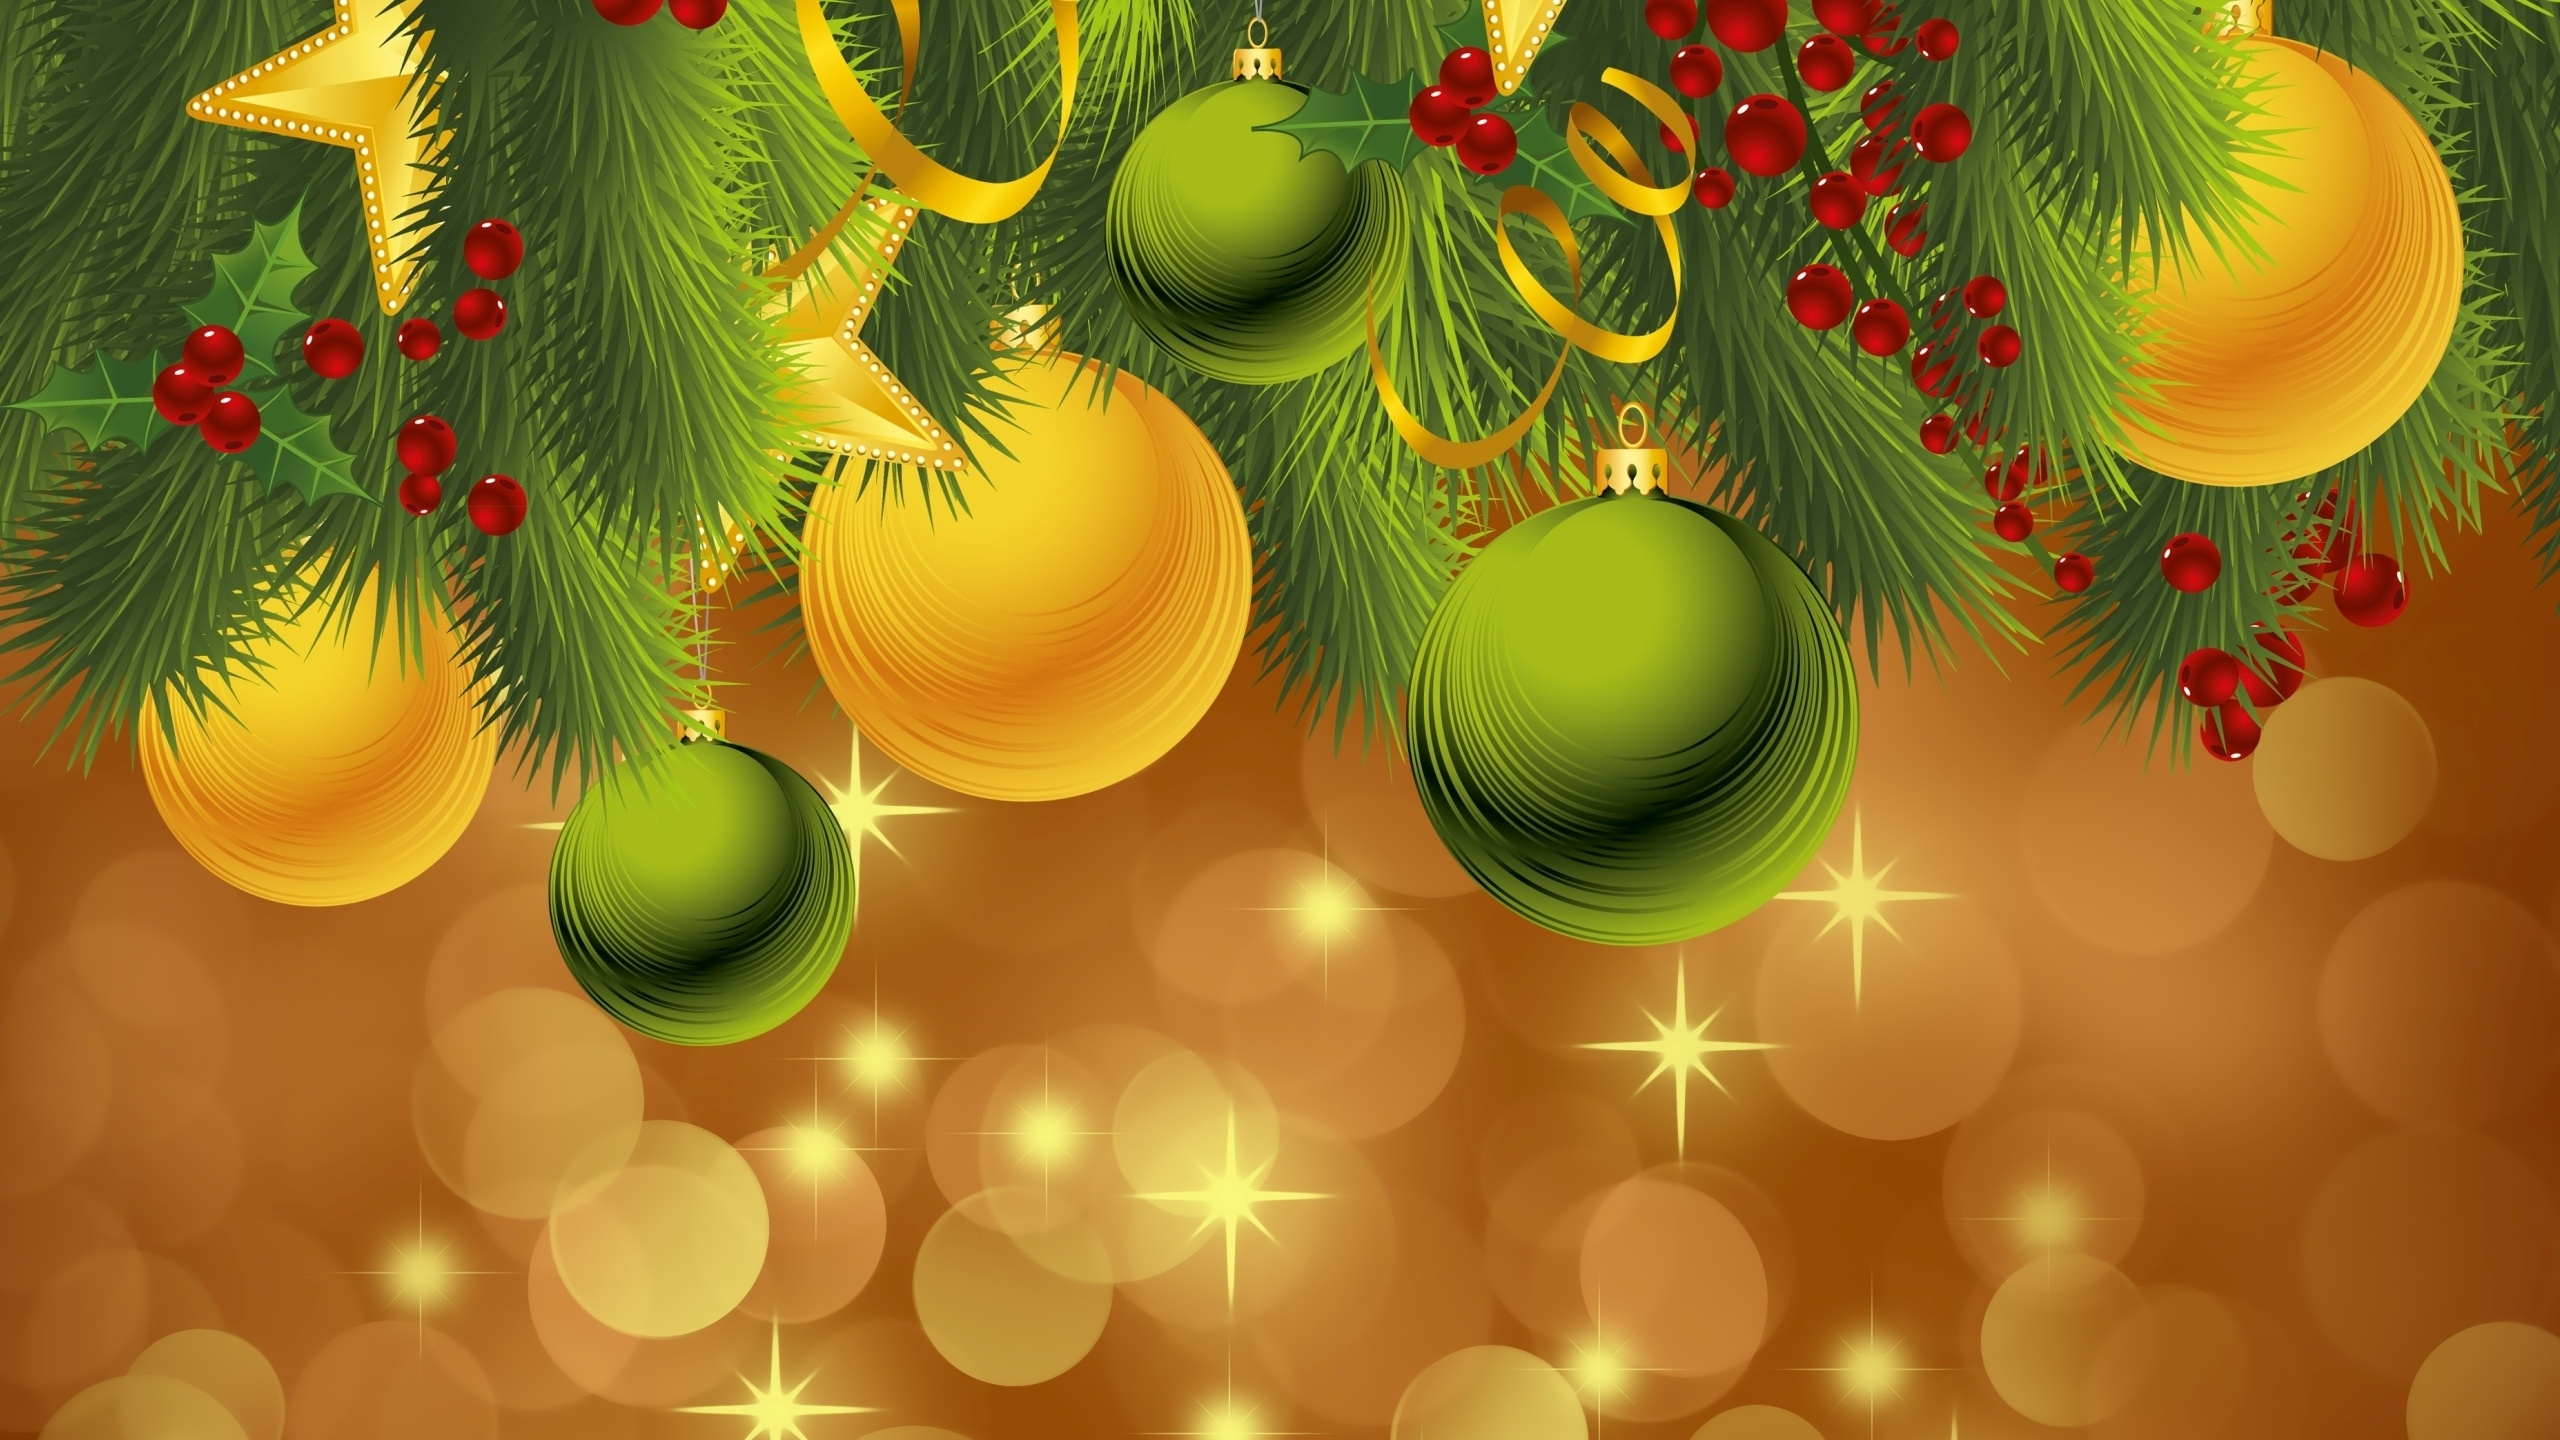 圣诞节那天, 新的一年, 圣诞节的装饰品, 假日, 绿色的 壁纸 2560x1440 允许